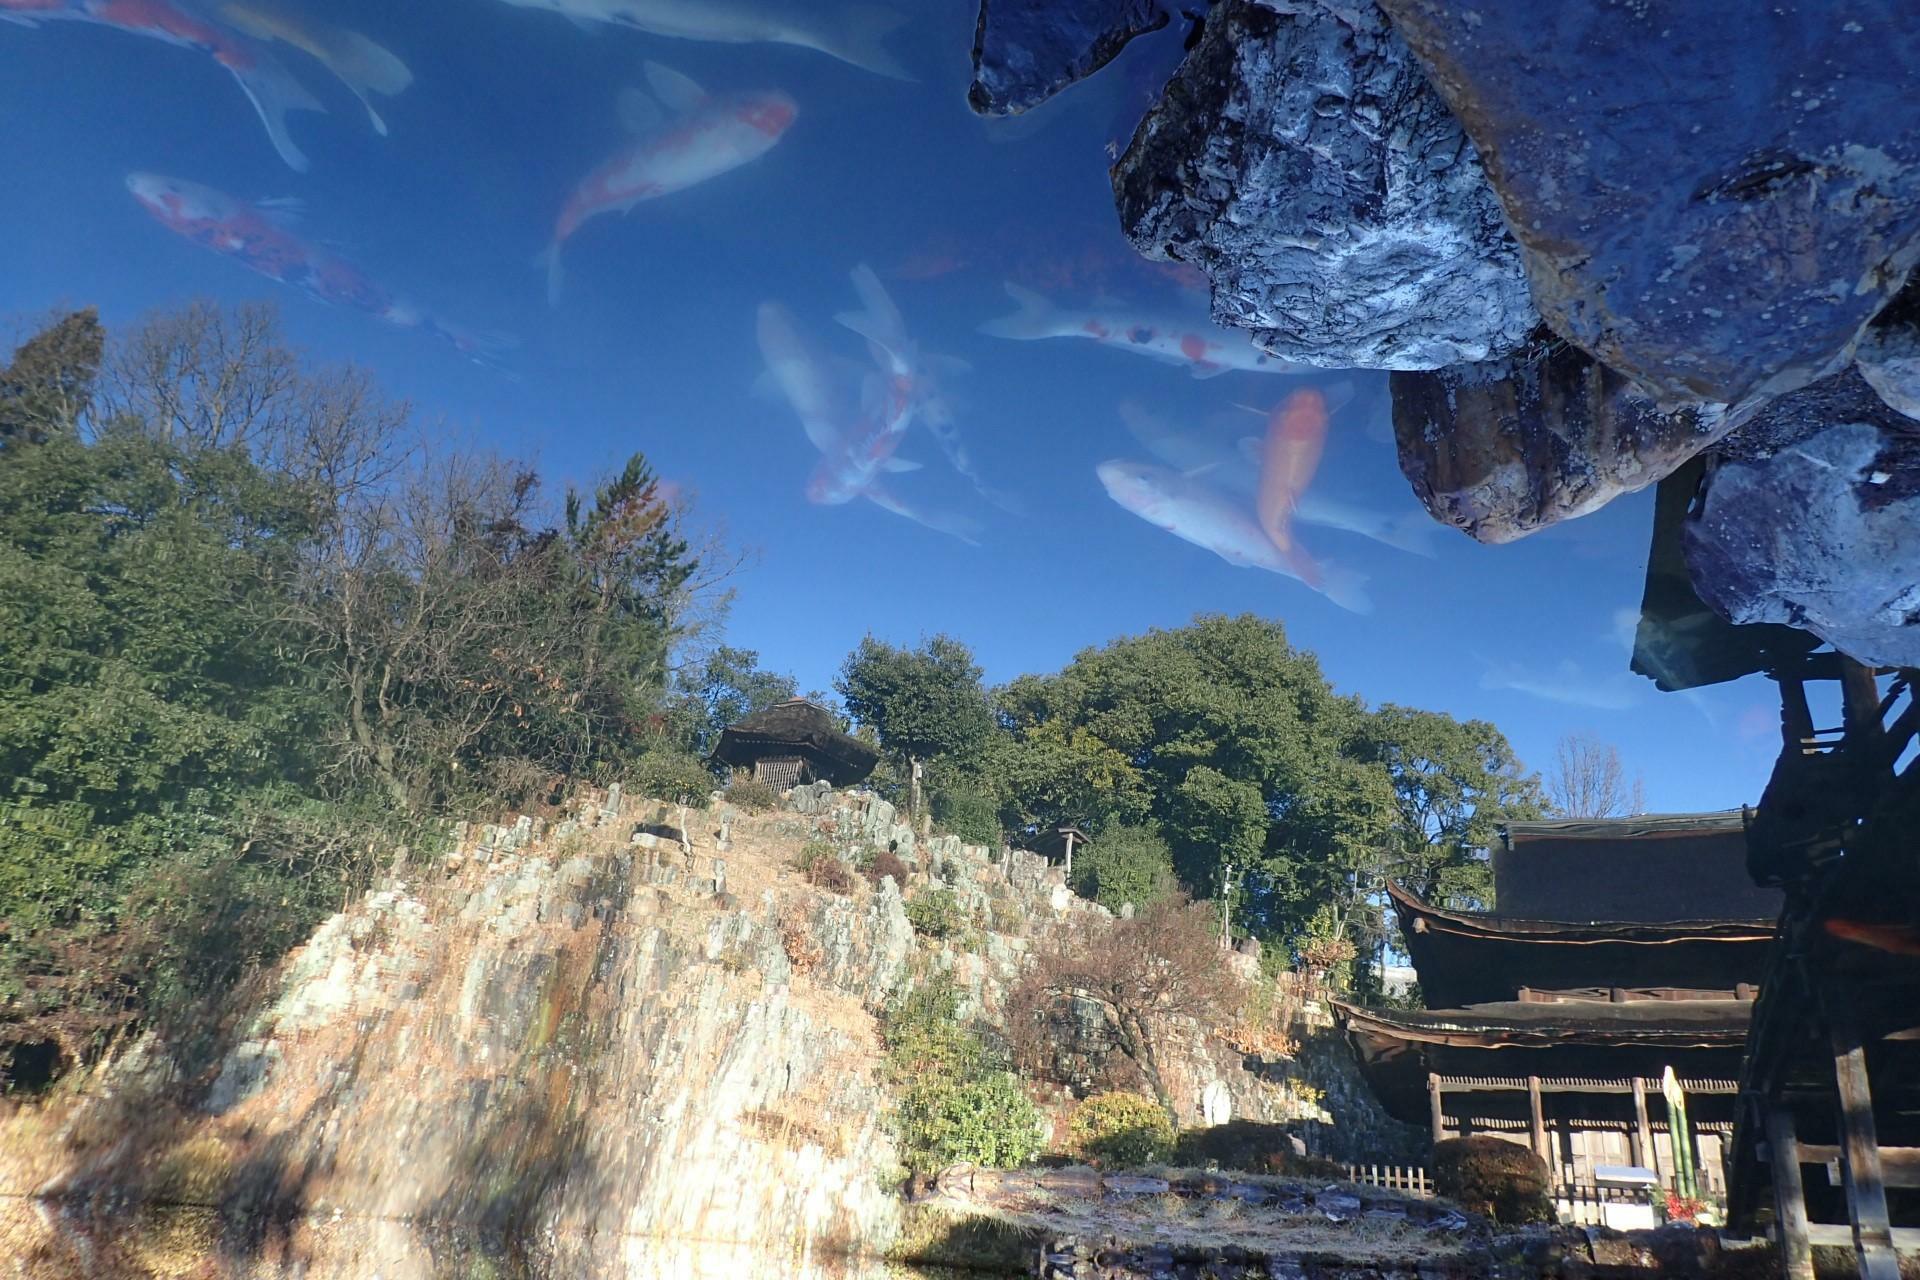 池を泳ぐ鯉の写真も上下反転させると、合成写真のような不思議な写真に